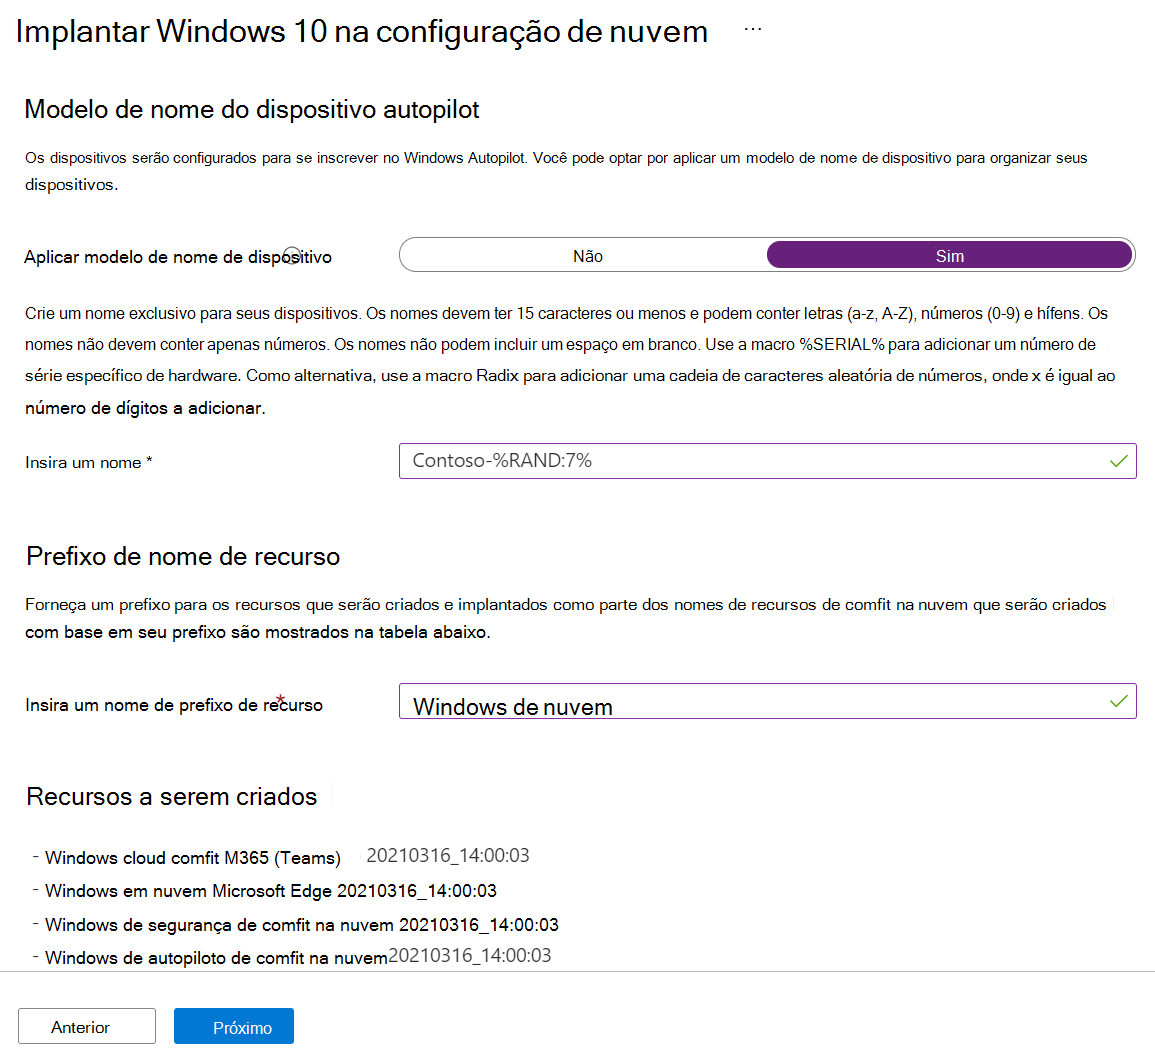 Captura de tela que mostra como configurar o modelo de nome do dispositivo e o prefixo de nome do recurso em um cenário guiado de configuração de nuvem Windows 10/11 em Microsoft Intune.